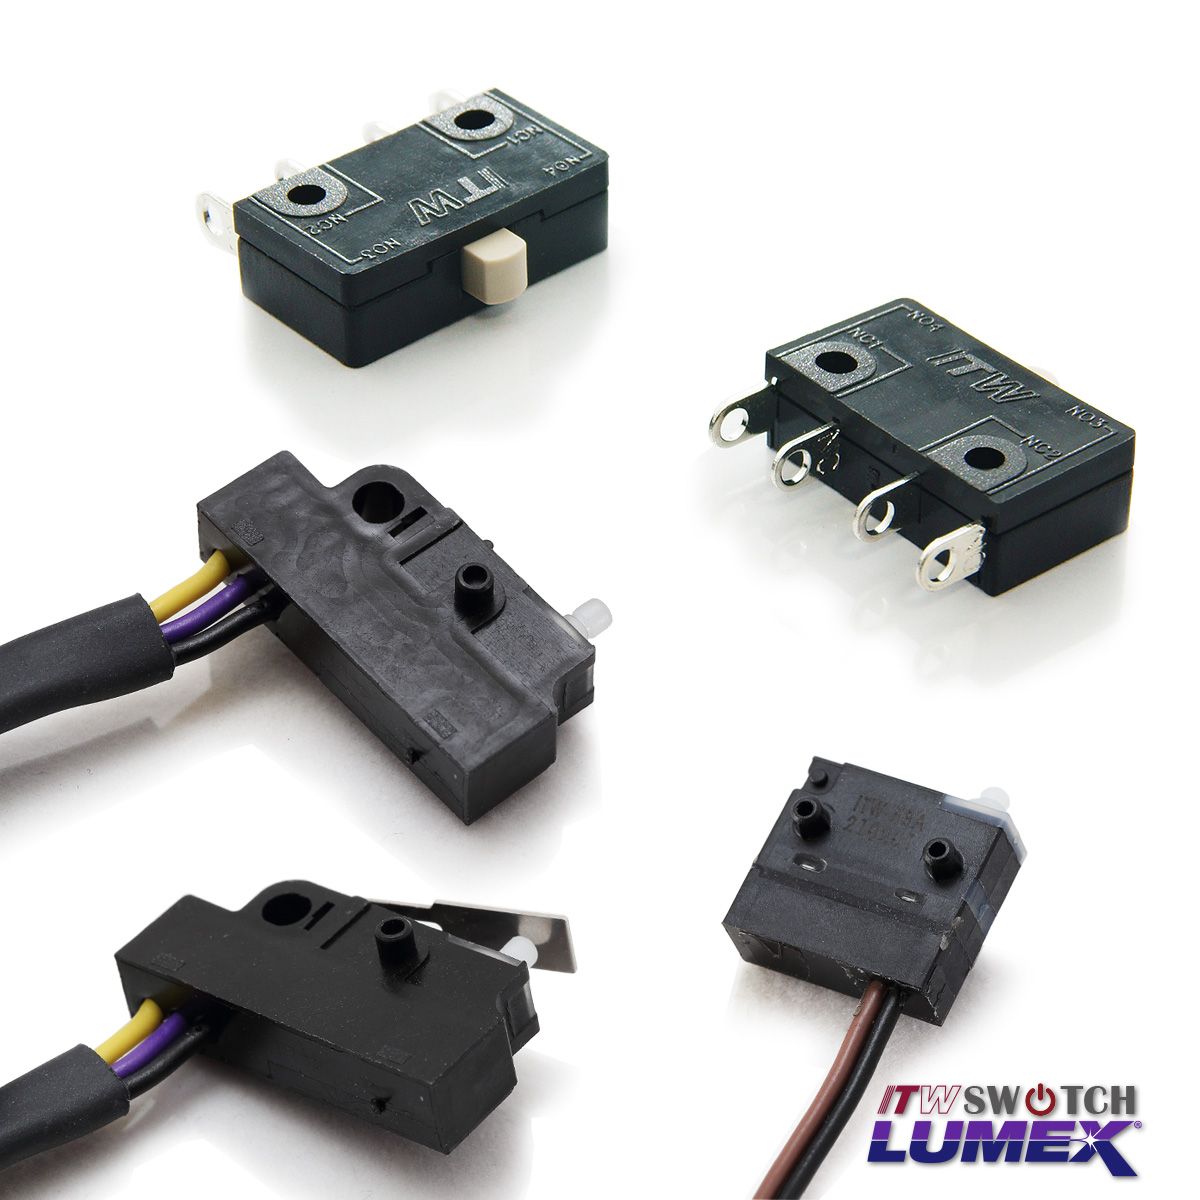 ITW Lumex Switchfornisce microinterruttori come parte della sua offerta di prodotti.